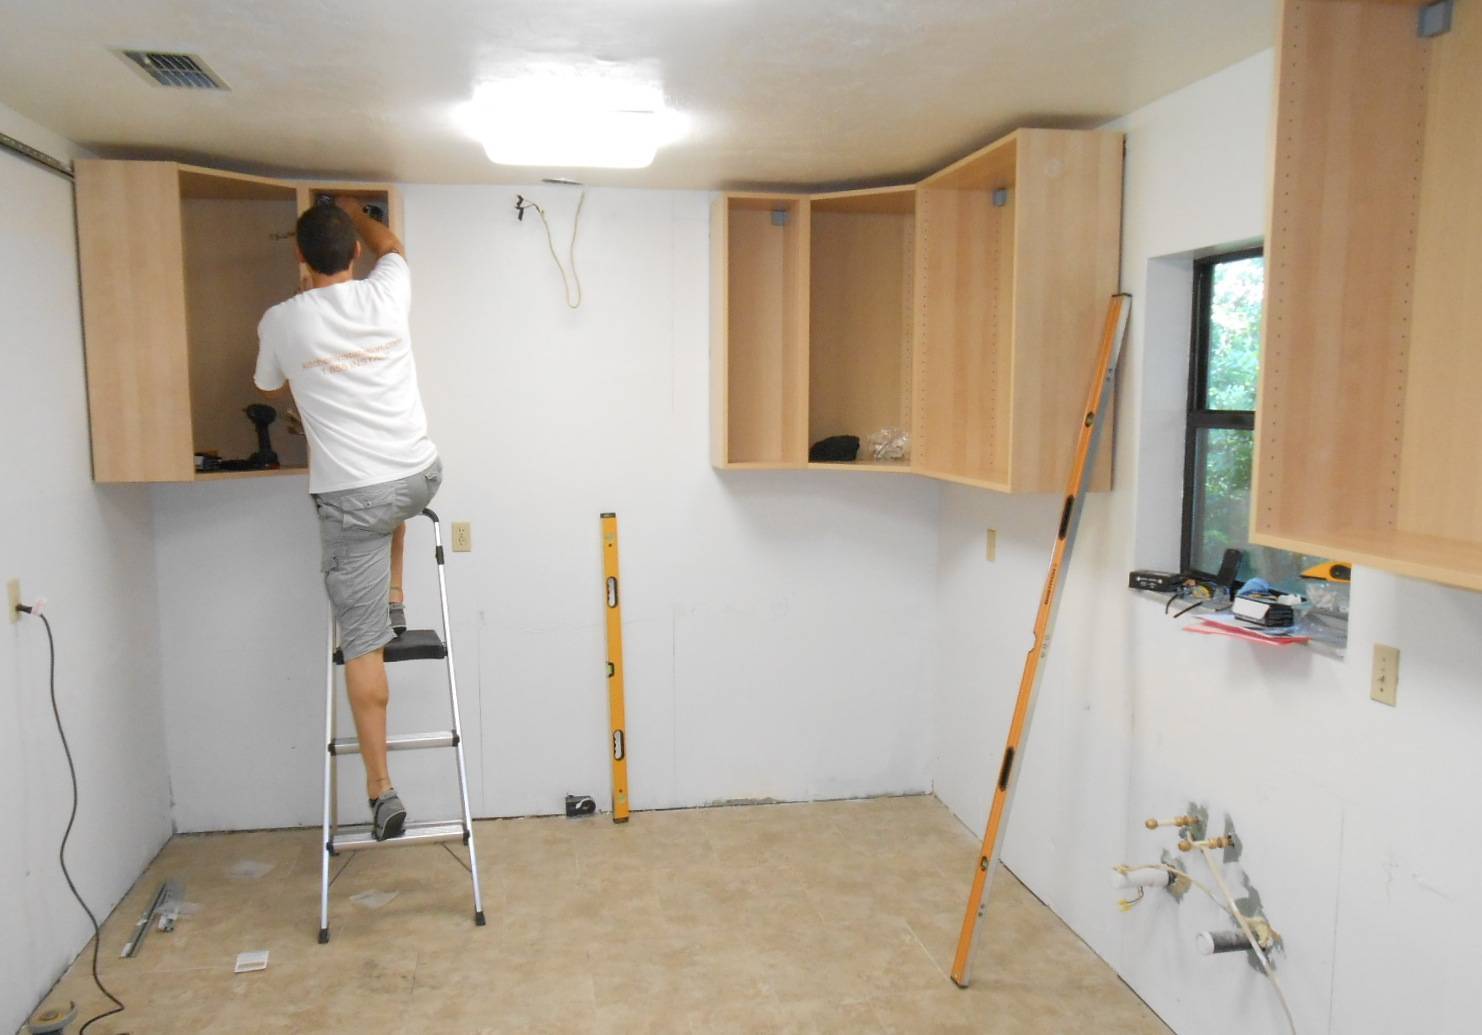 Как повесить кухонные шкафы на стену ровно - пошаговая инструкция